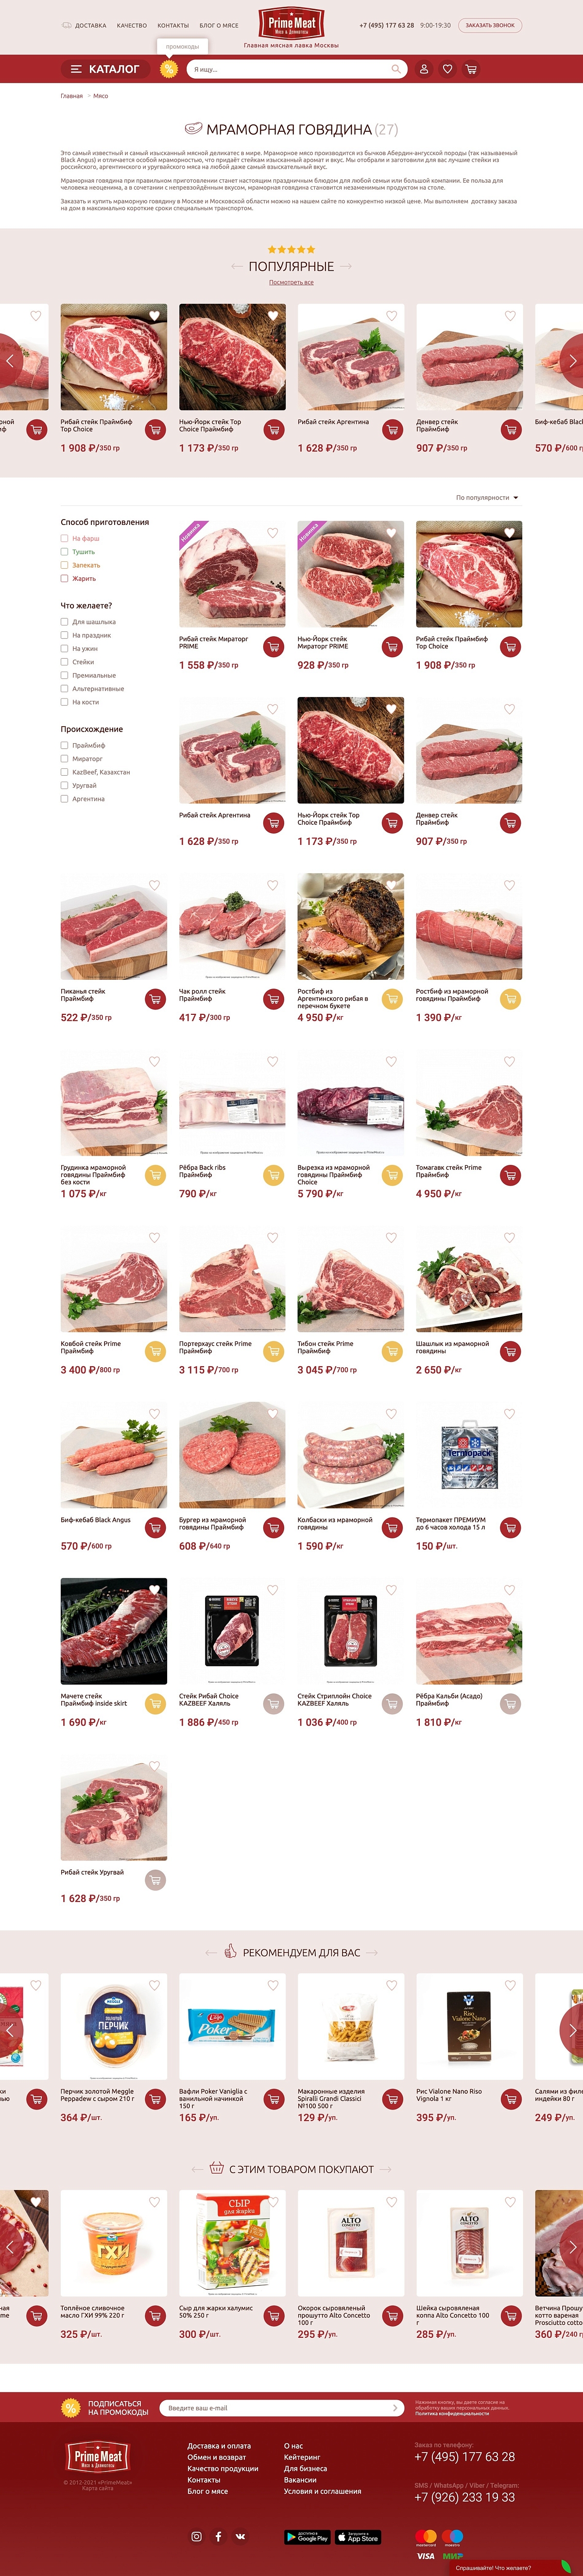 Premium meat online store